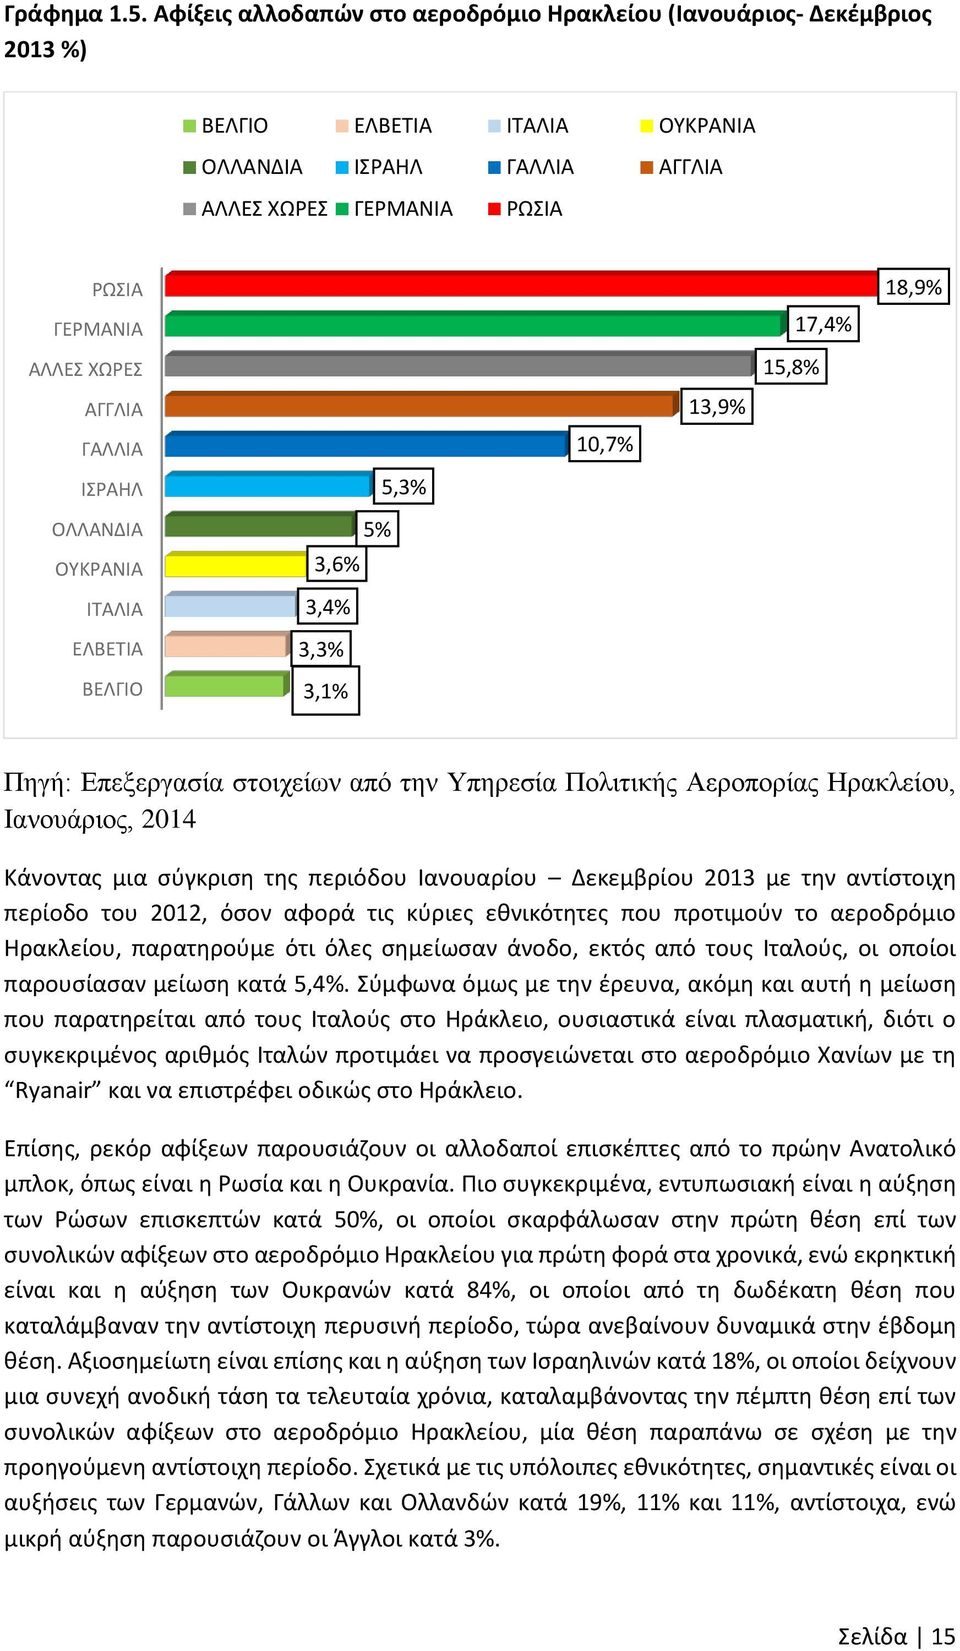 ΓΑΛΛΙΑ ΙΣΡΑΗΛ ΟΛΛΑΝΔΙΑ ΟΥΚΡΑΝΙΑ ΙΤΑΛΙΑ ΕΛΒΕΤΙΑ ΒΕΛΓΙΟ 5,3% 5% 3,6% 3,4% 3,3% 3,1% 10,7% 13,9% 15,8% 17,4% 18,9% Πηγή: Επεξεργασία στοιχείων από την Υπηρεσία Πολιτικής Αεροπορίας Ηρακλείου,